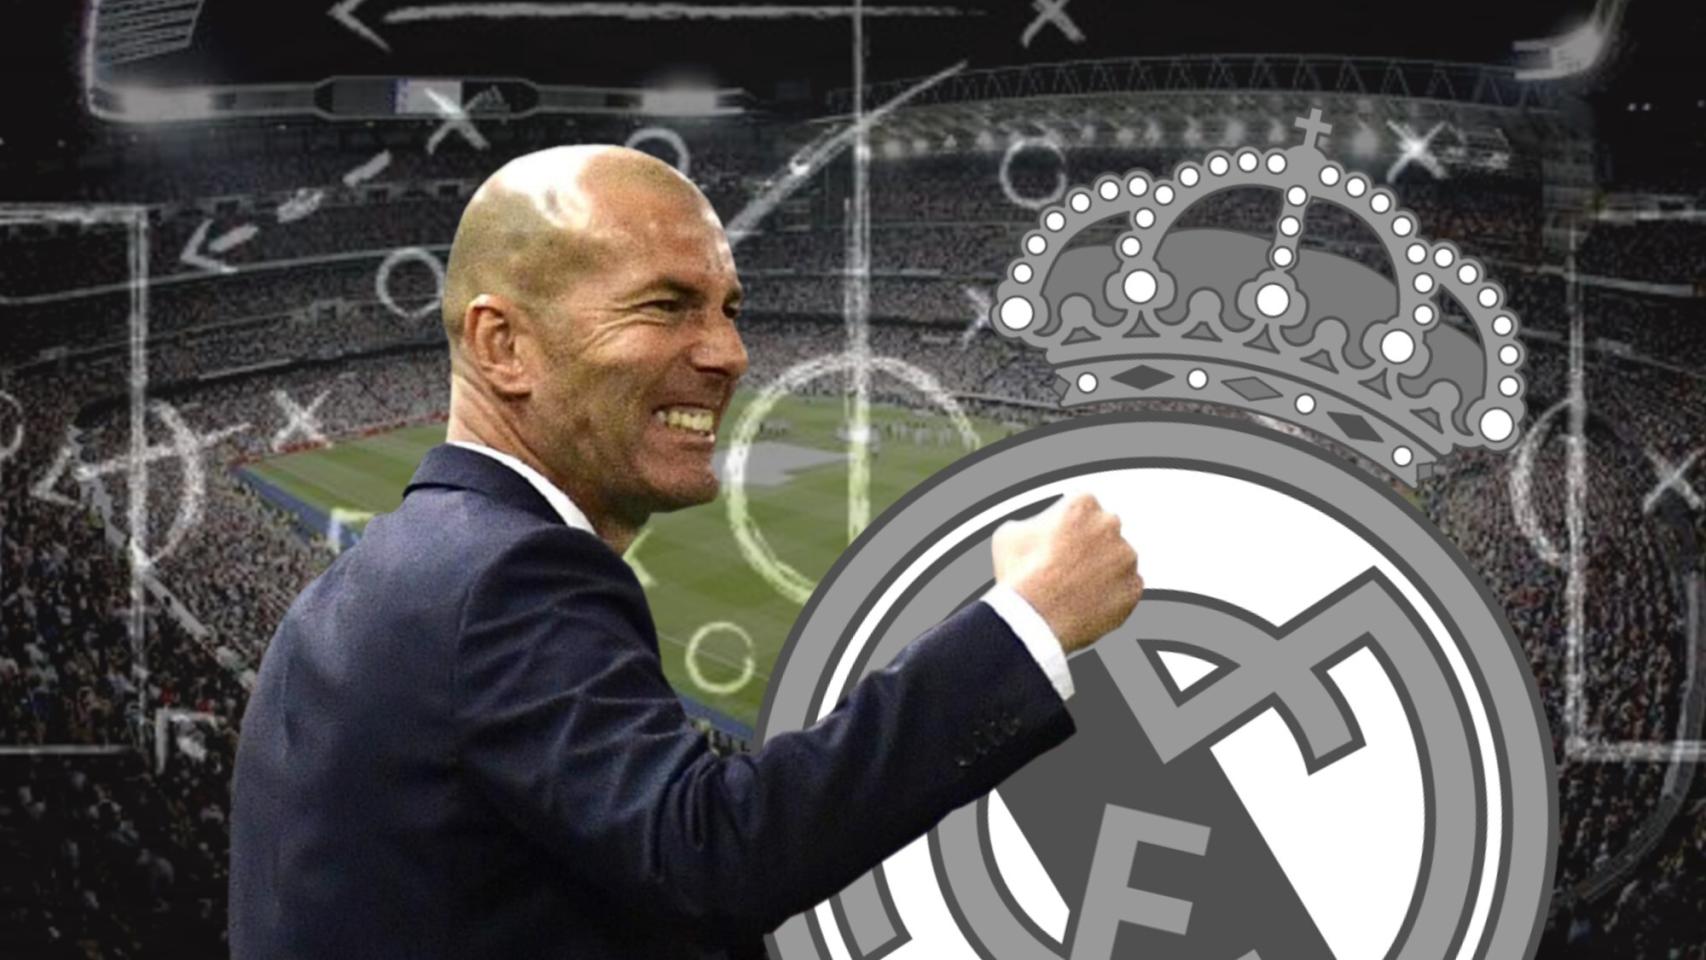 Zidane.